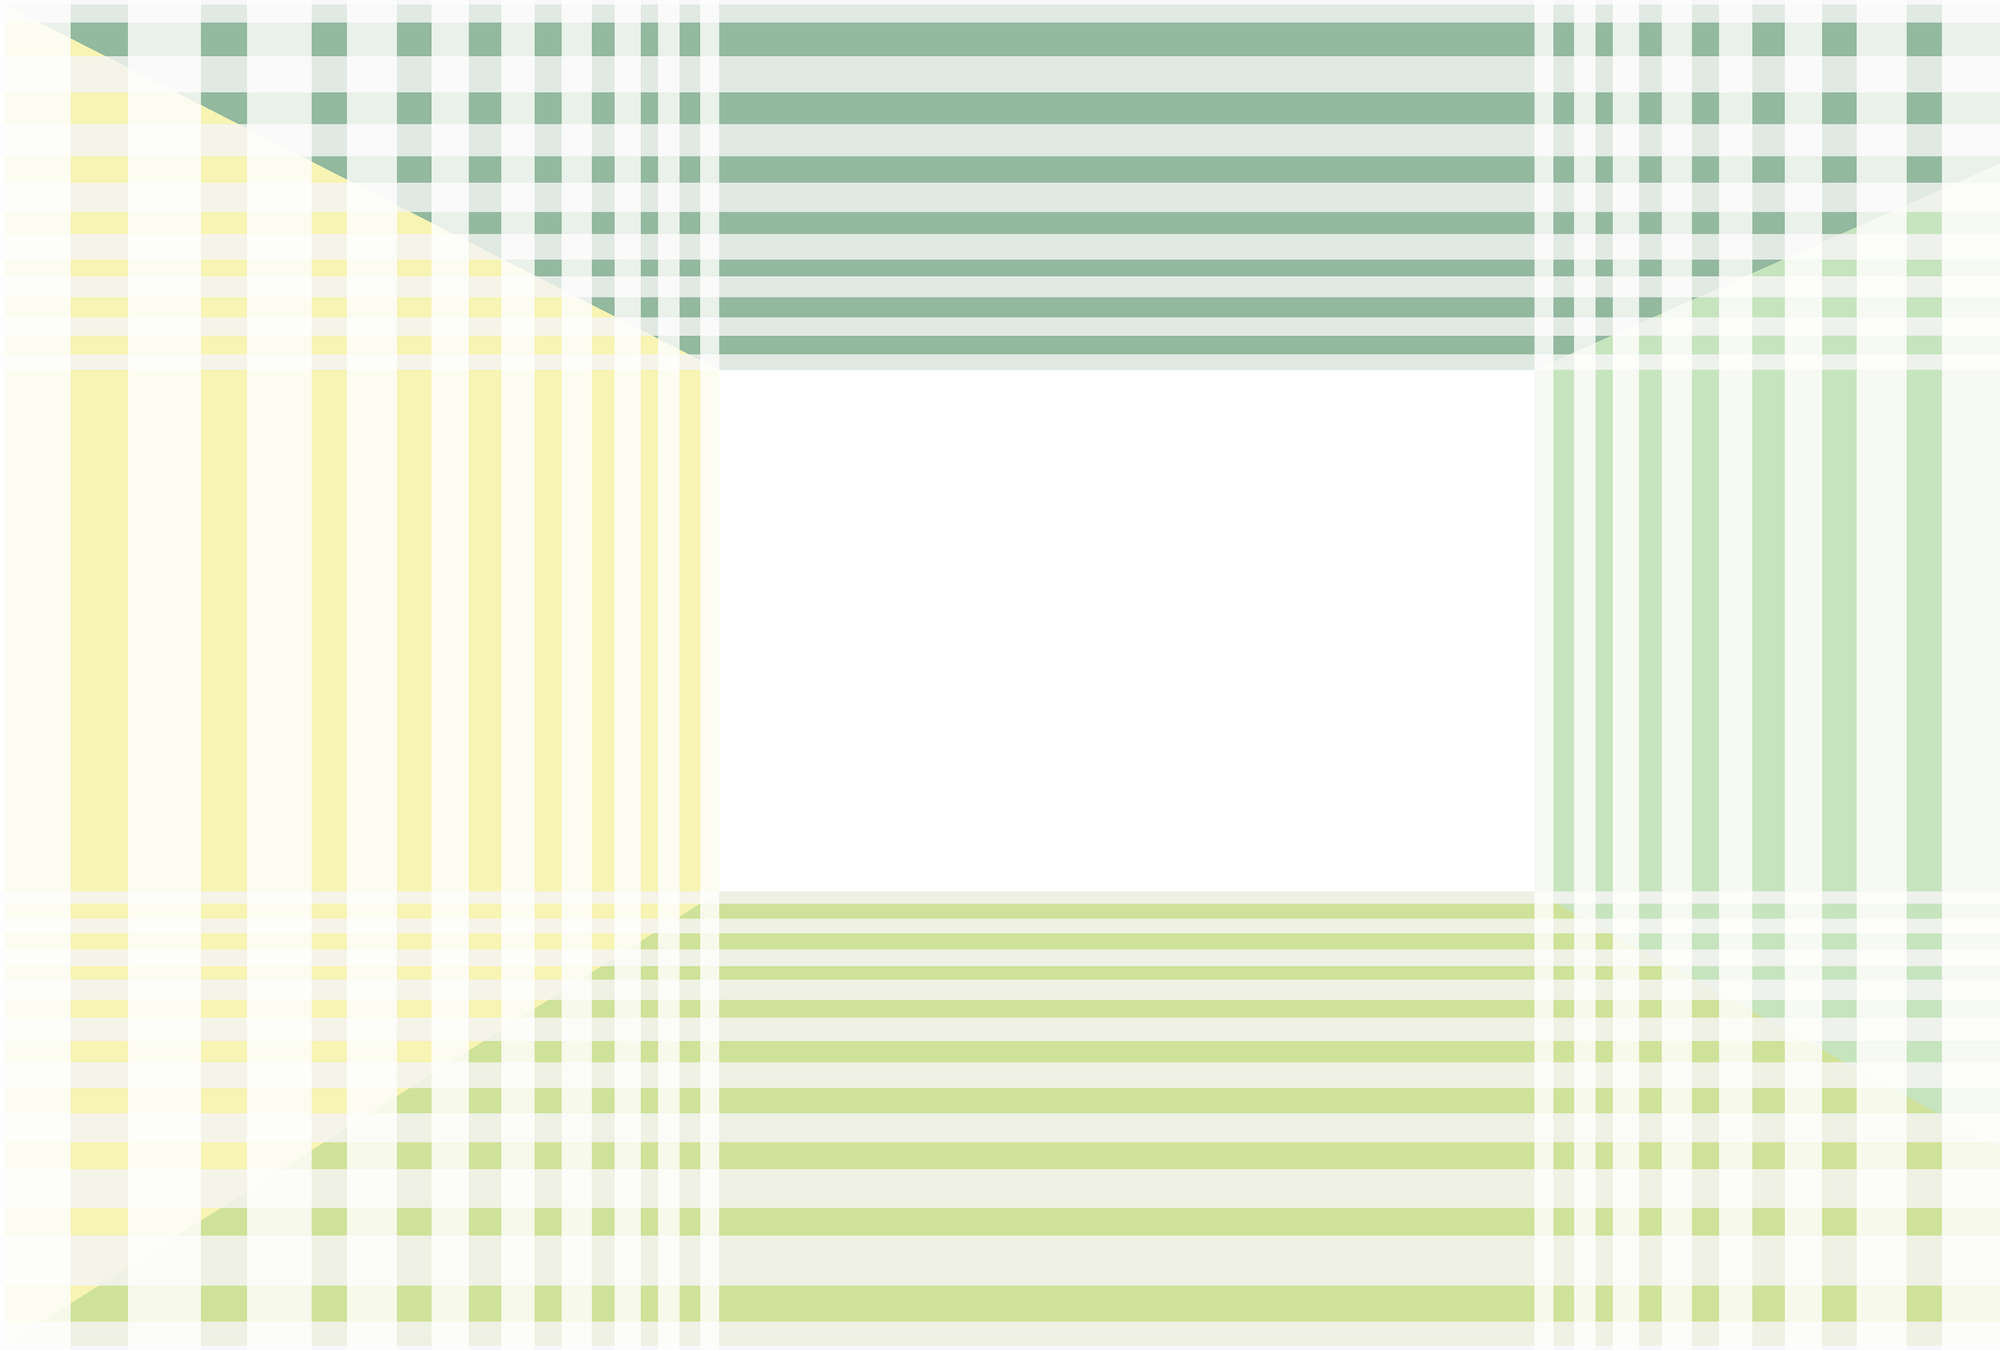             Minimalistisch Stripe Patroon Behang - Groen, Wit, Geel
        